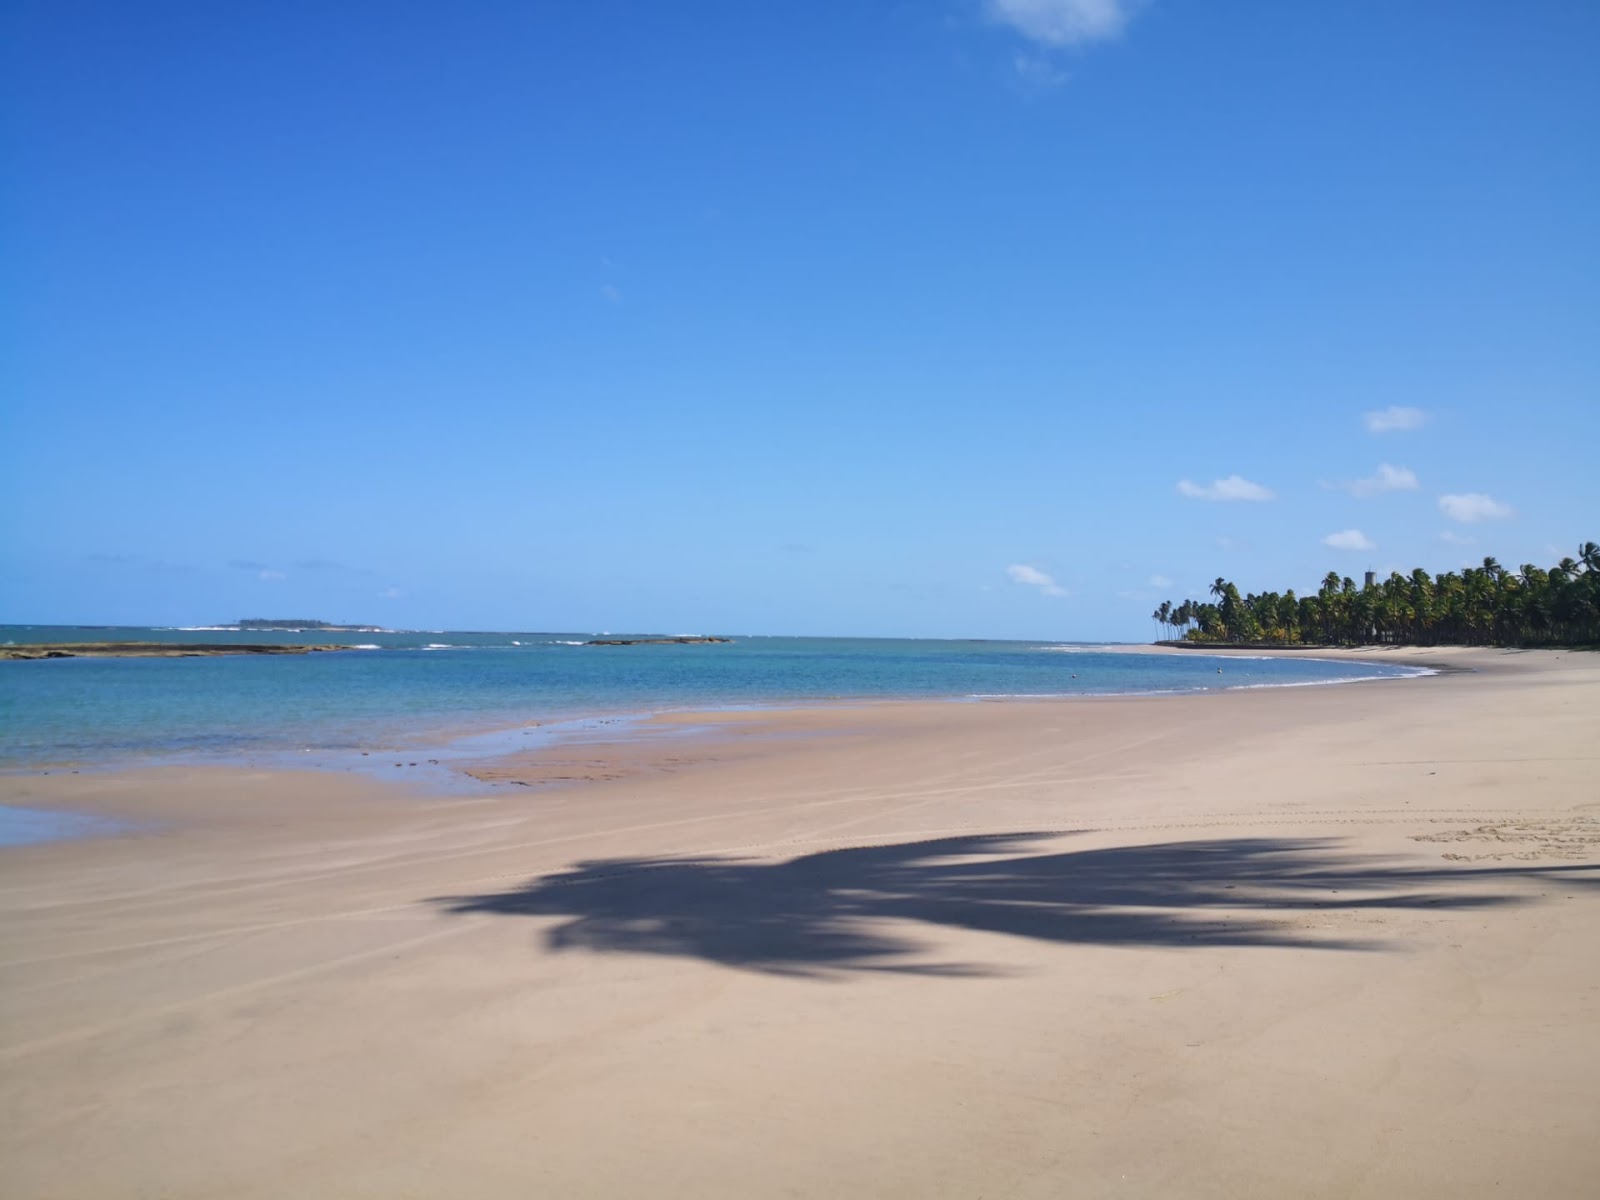 Foto af Toquinho Beach - populært sted blandt afslapningskendere